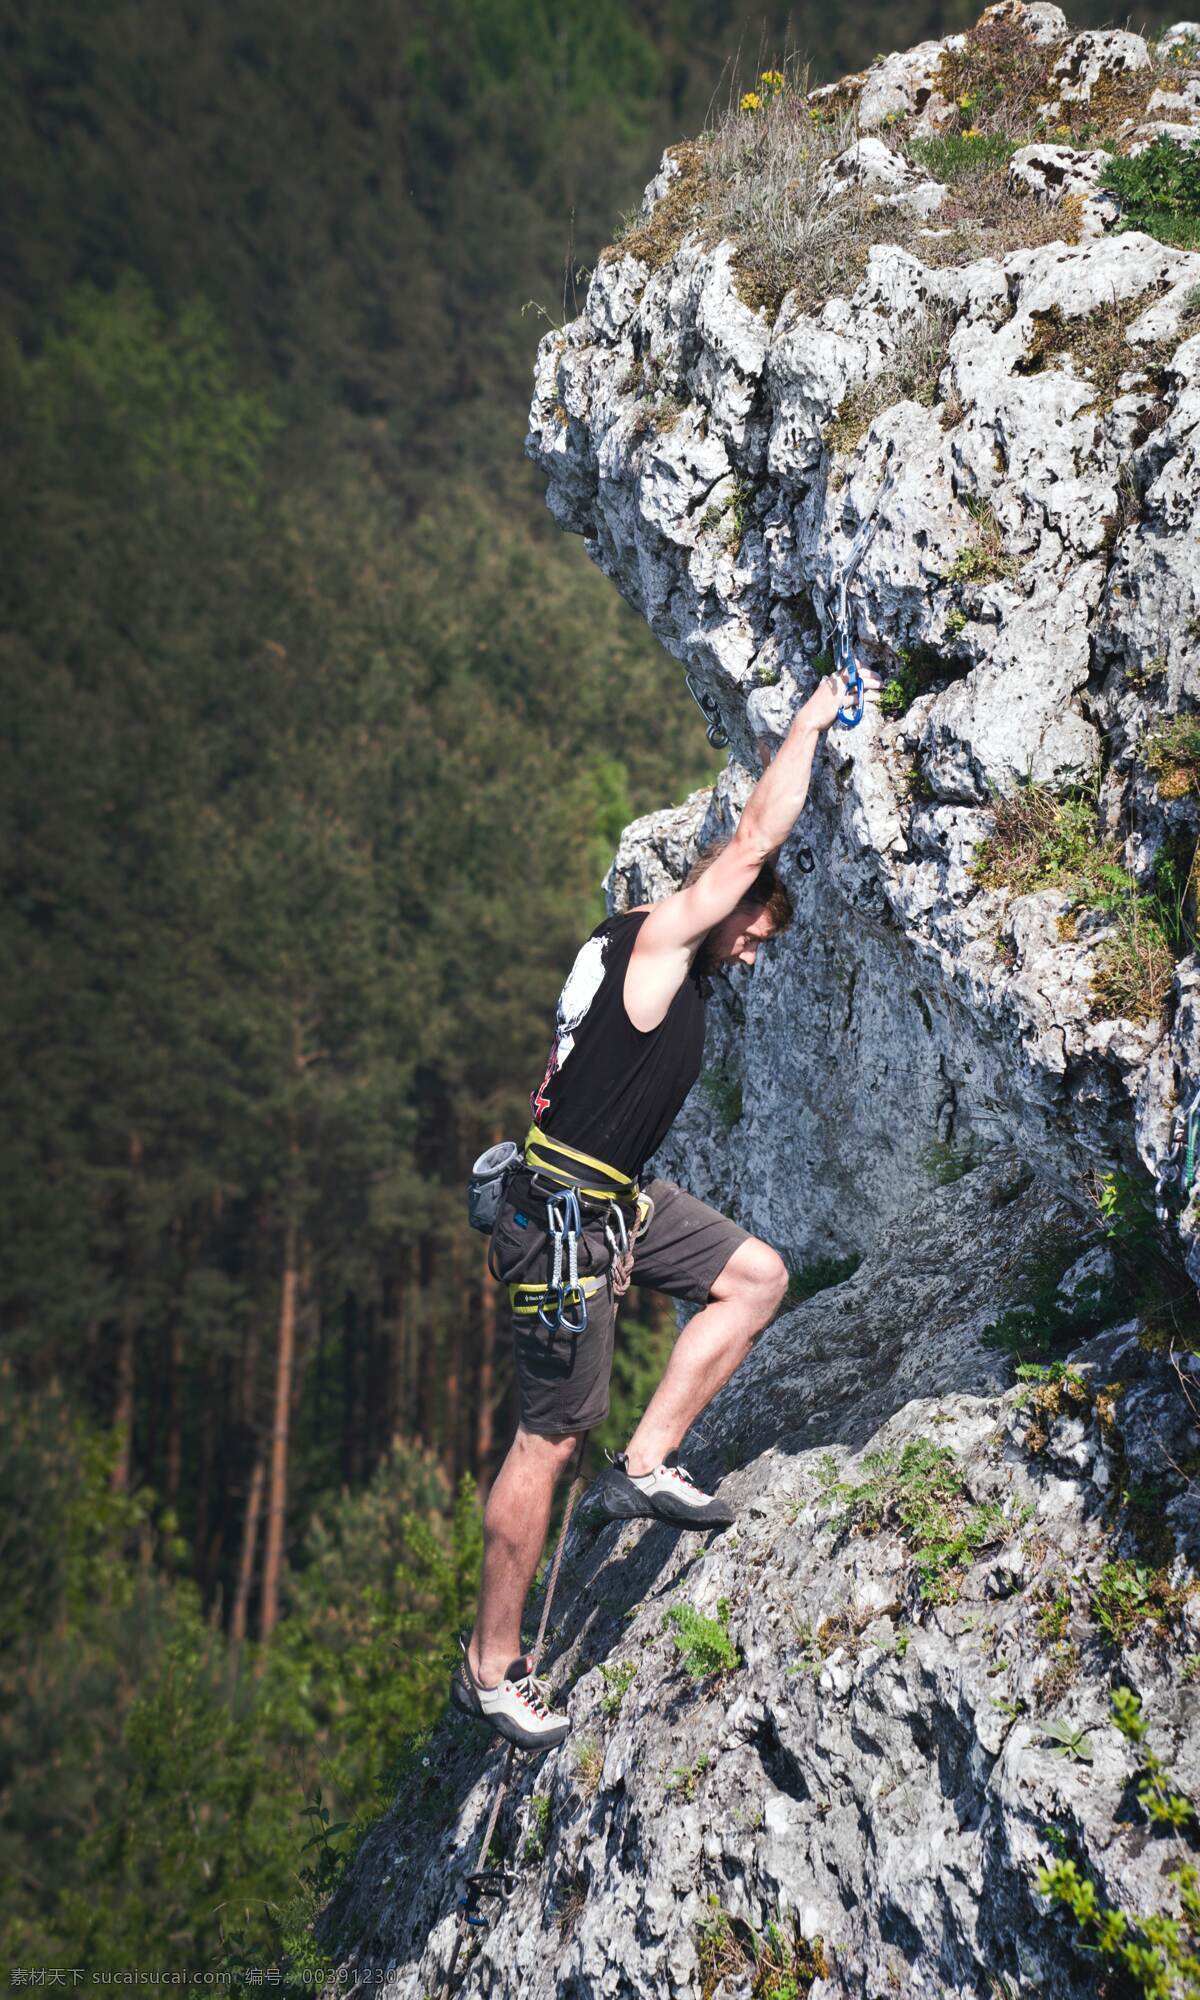 冒险者男性 侧影 冒险 攀登者 攀登 悬崖 探险 运动 户外活动 锻炼 男性 人 攀岩 爱好 石头 山 人物 人物图库 男性男人